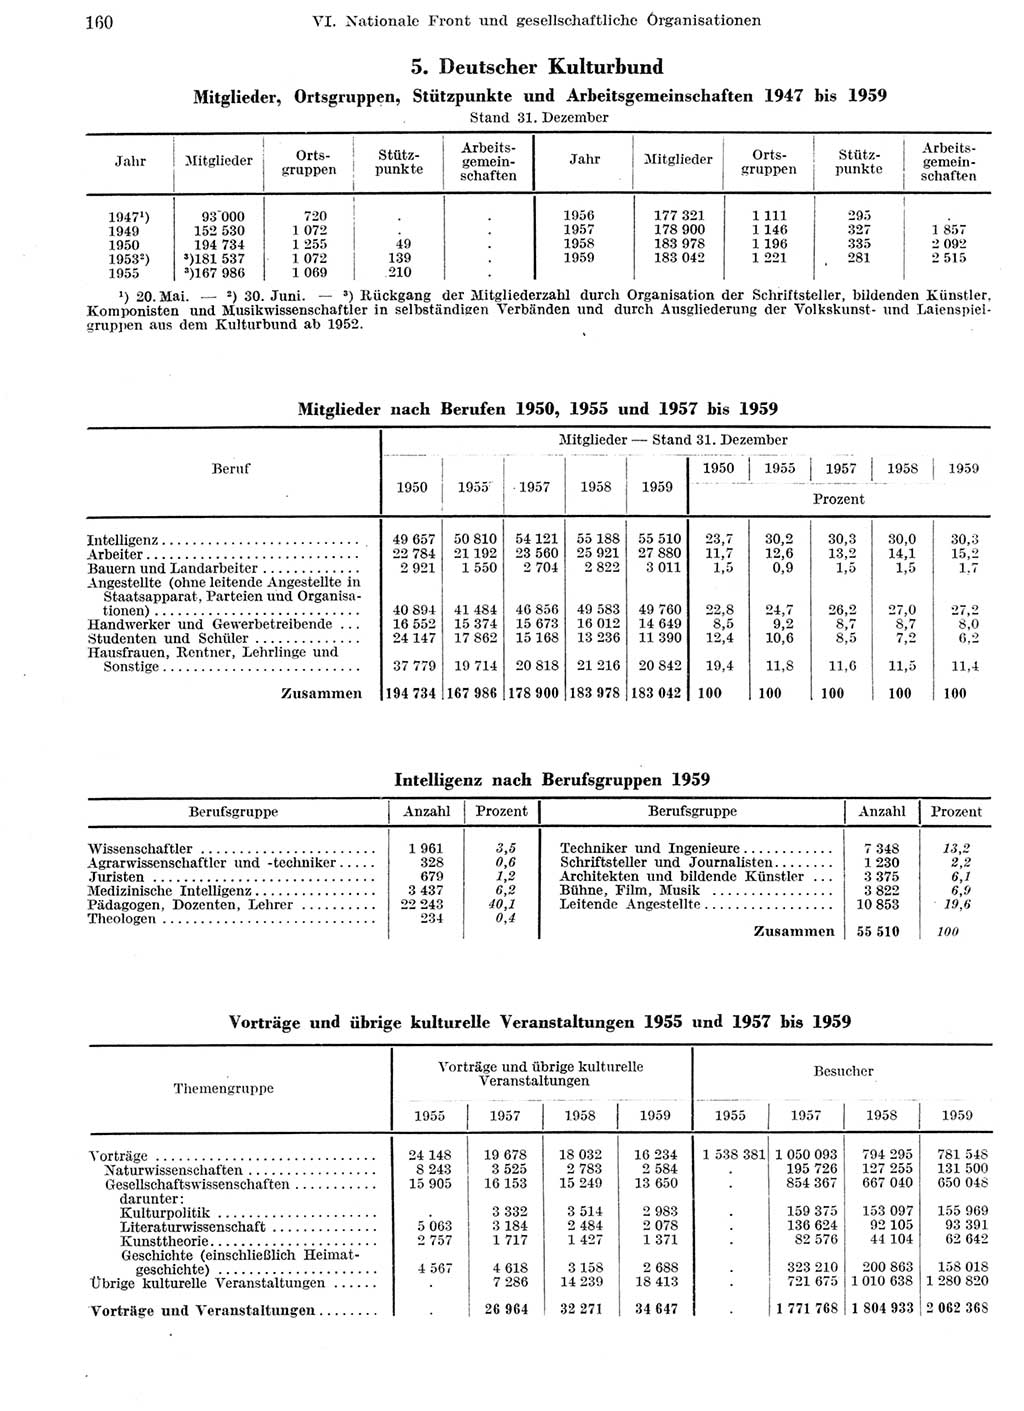 Statistisches Jahrbuch der Deutschen Demokratischen Republik (DDR) 1959, Seite 160 (Stat. Jb. DDR 1959, S. 160)